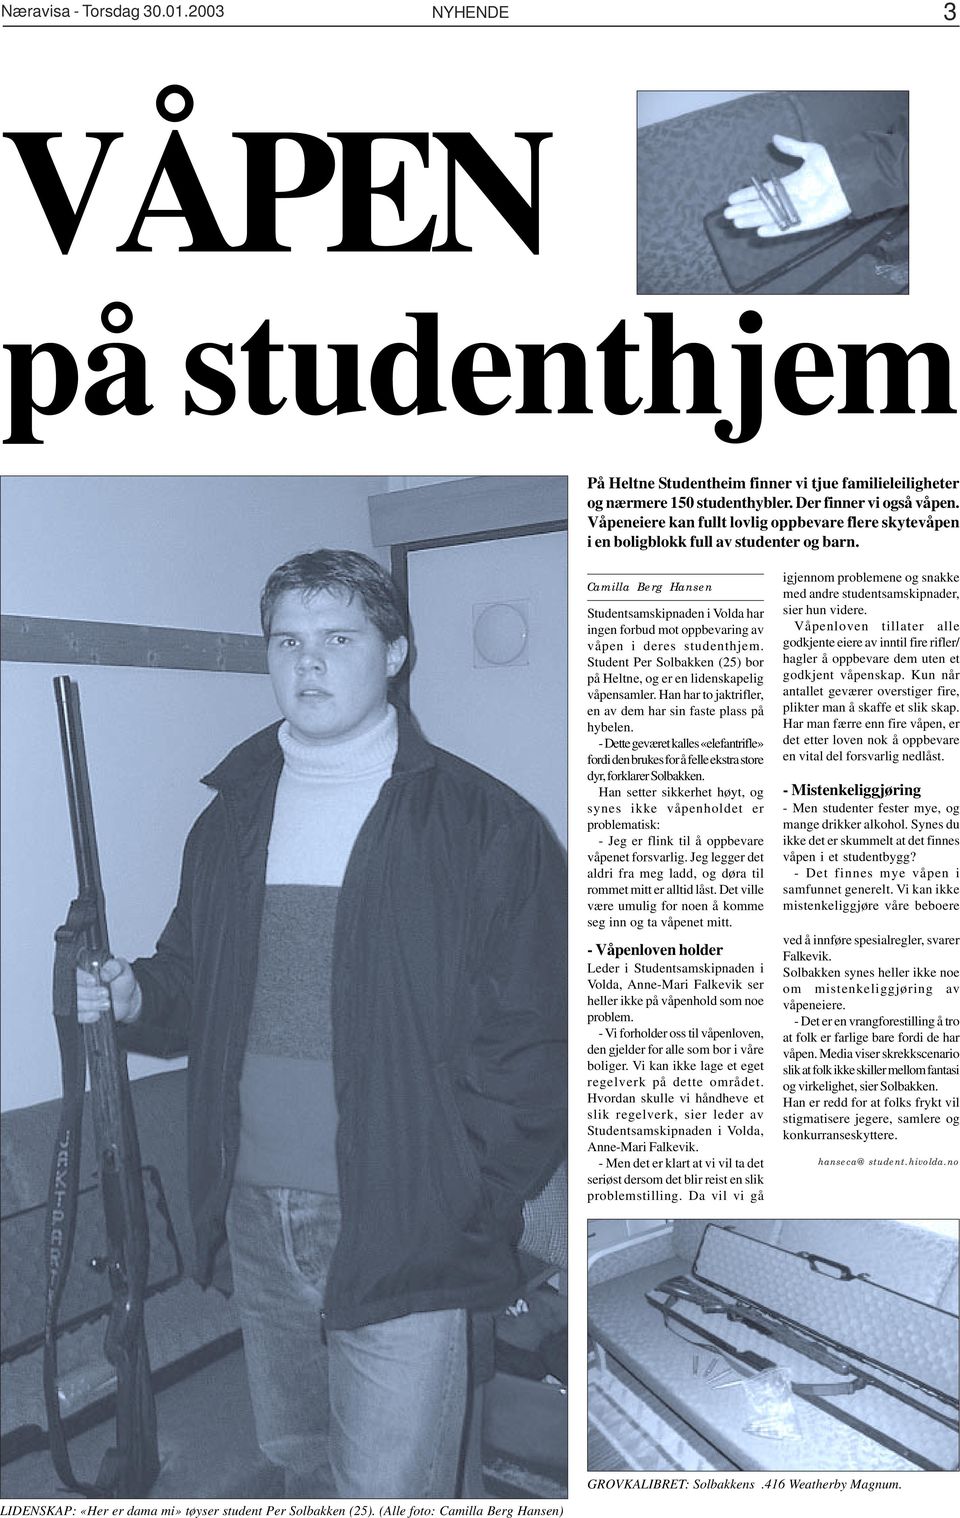 Camilla Berg Hansen Studentsamskipnaden i Volda har ingen forbud mot oppbevaring av våpen i deres studenthjem. Student Per Solbakken (25) bor på Heltne, og er en lidenskapelig våpensamler.